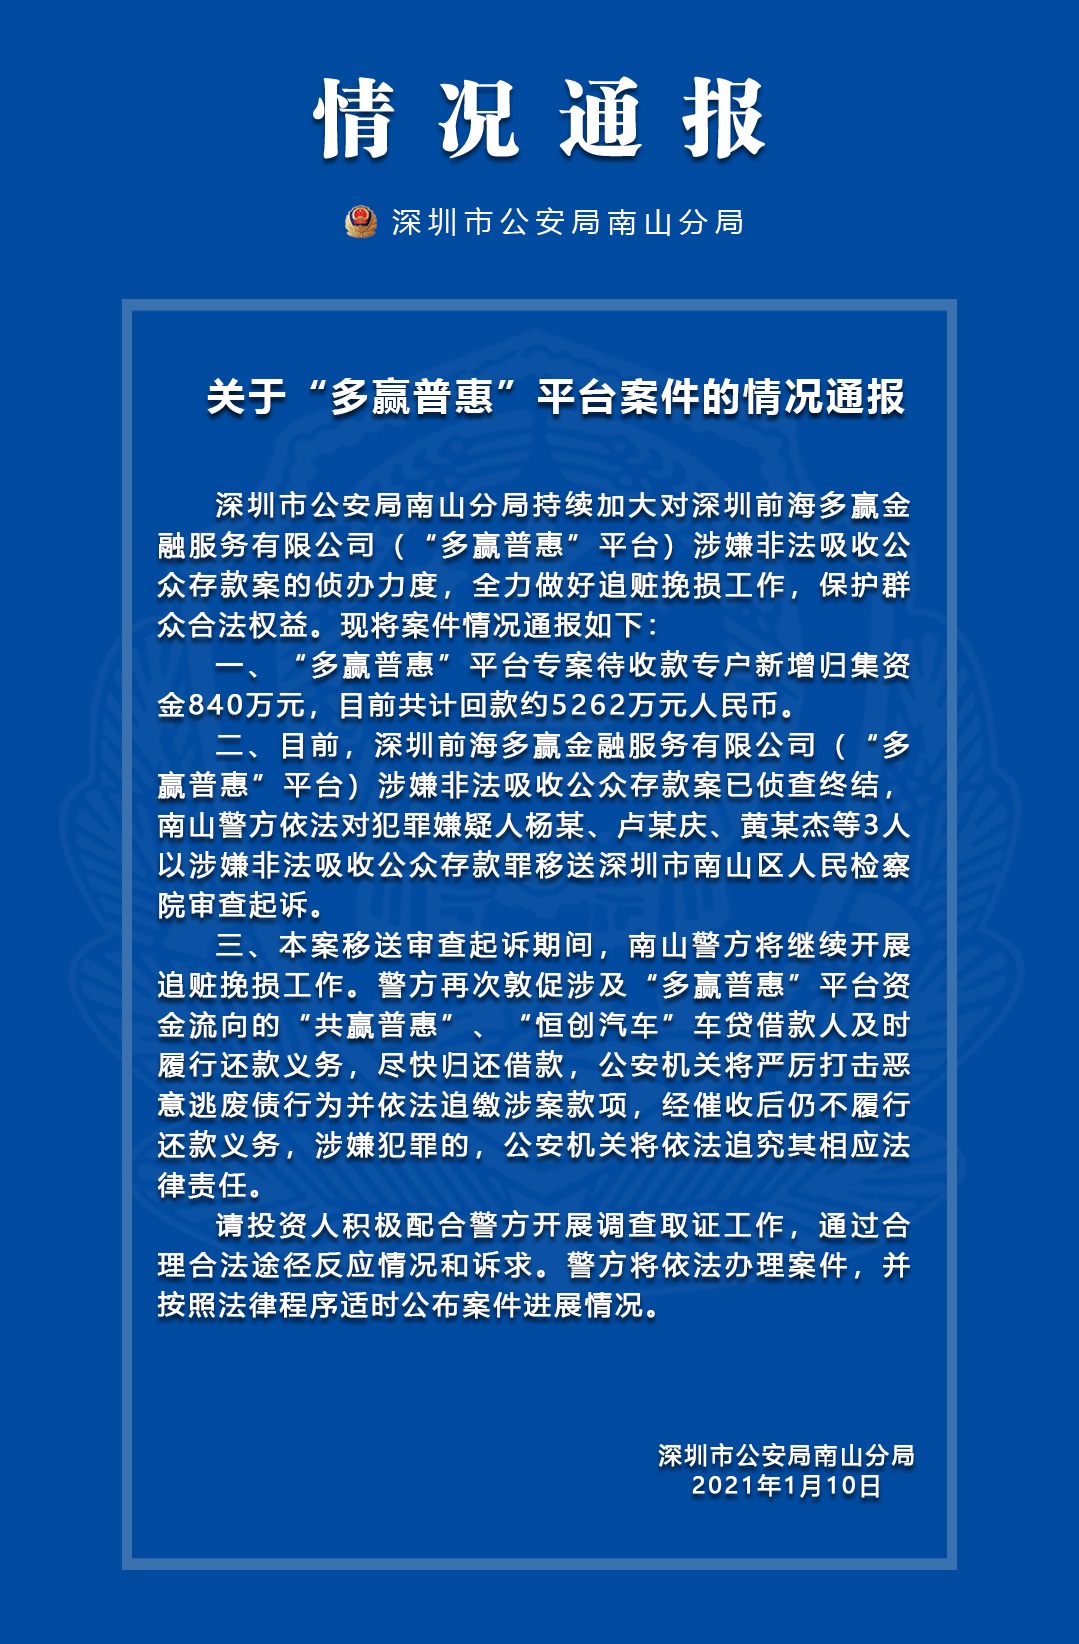 深圳警方通报多赢普惠、妈妈钱包案件最新进展